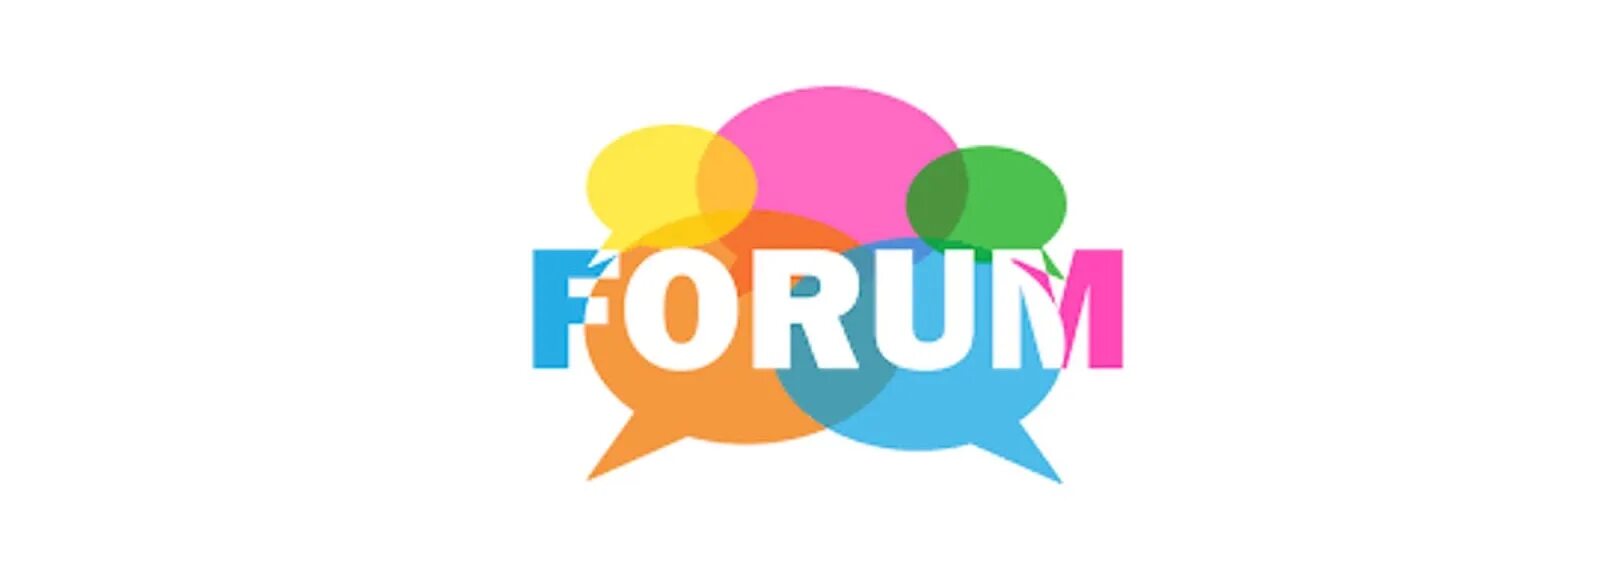 Веб форум. Forum dgiggtal лого. Jabit forum. Forum LOQ.